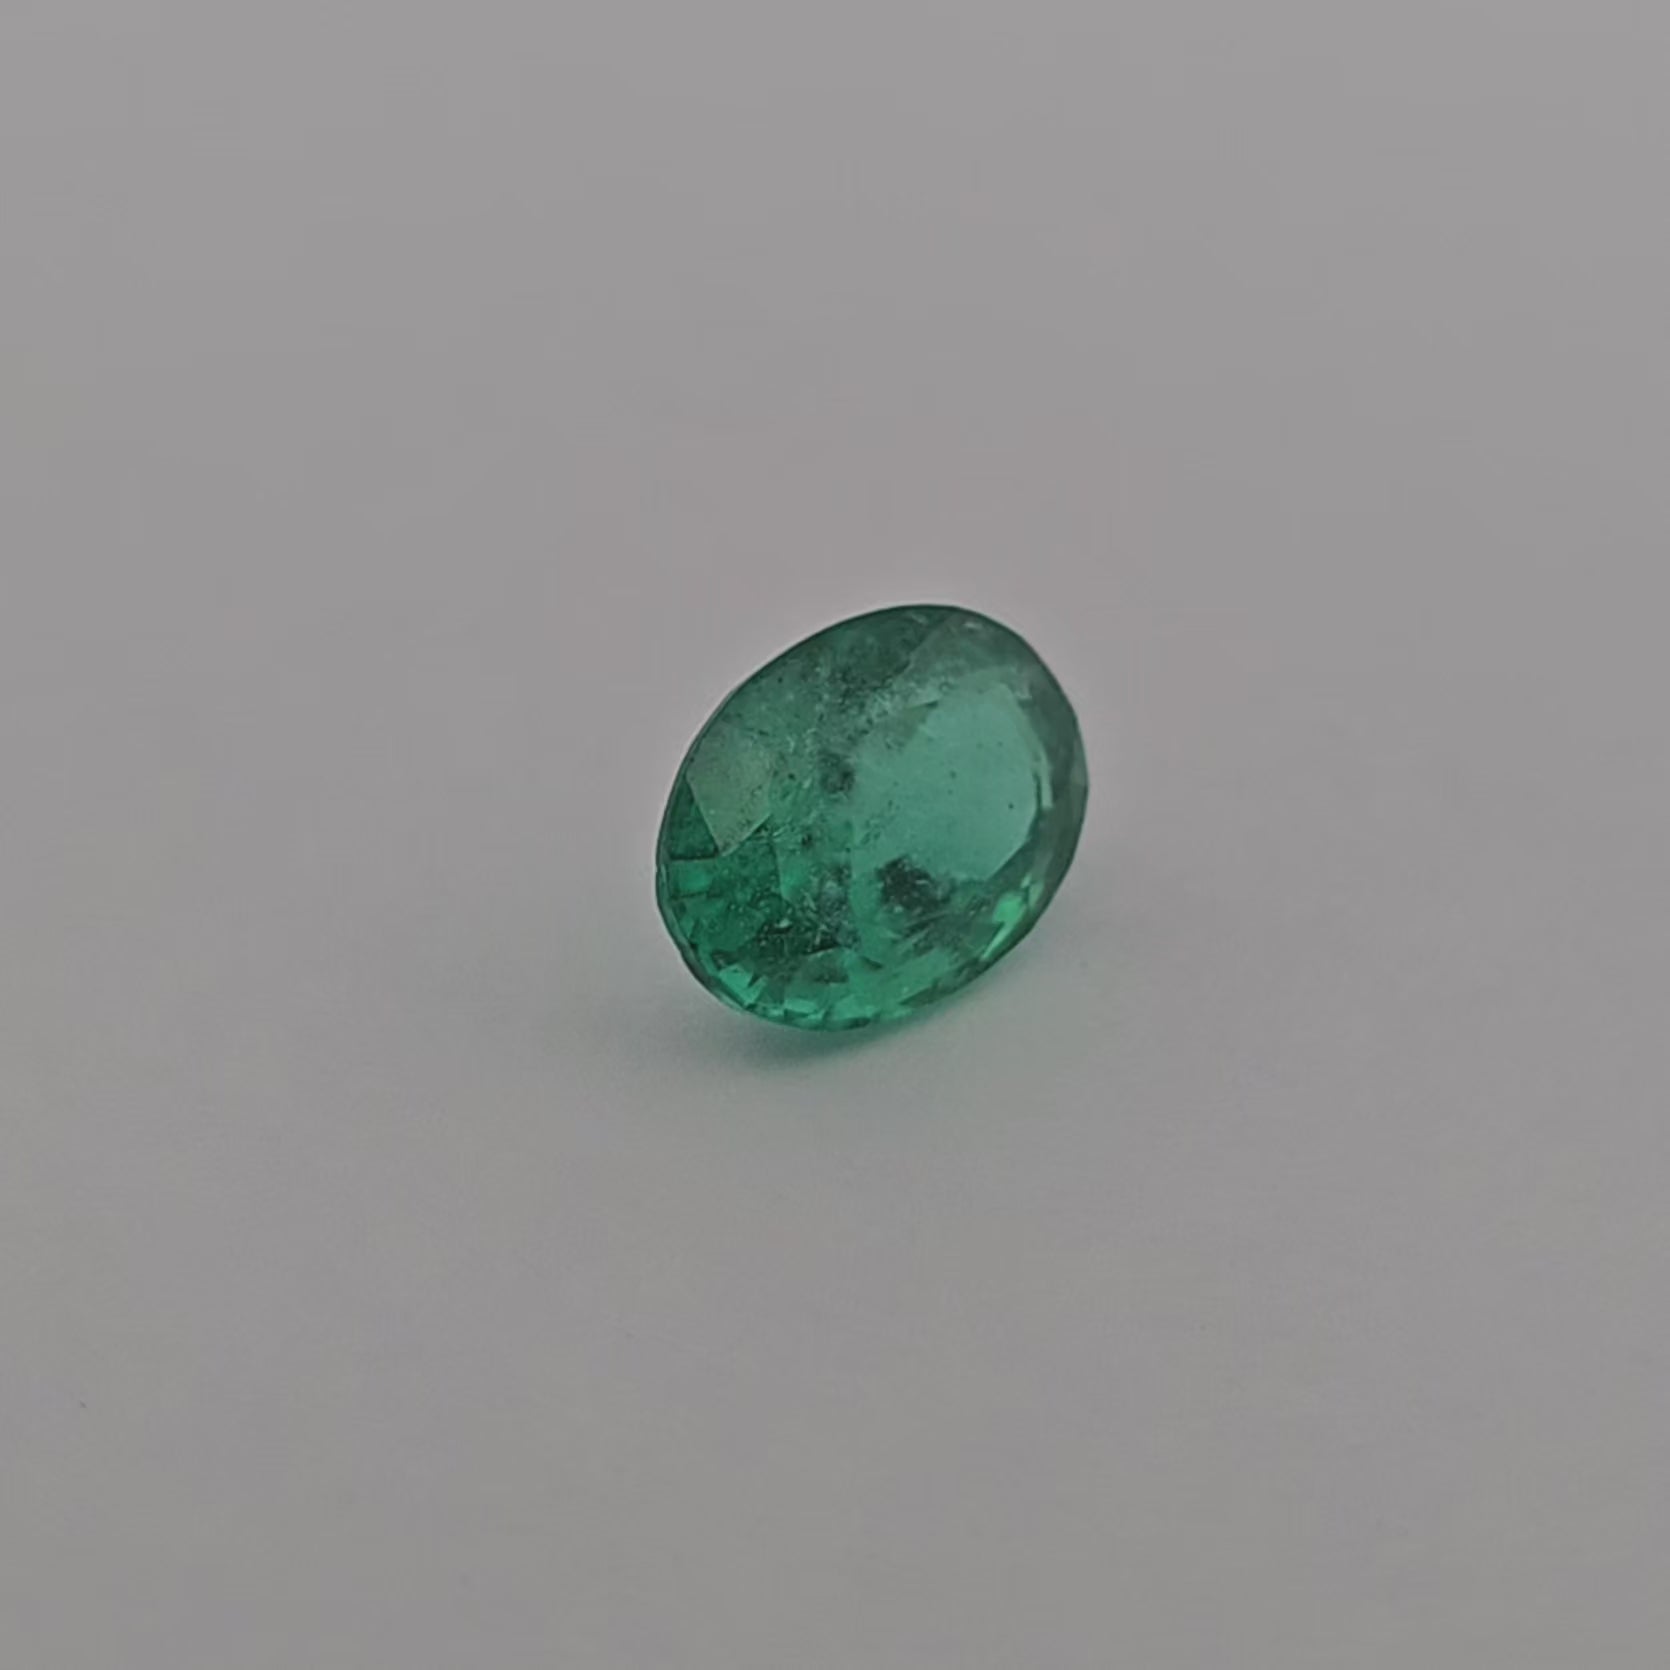 Natural Zambian Emerald Stone 1.86 Carats Oval Cut 9.4 x 6.9 mm